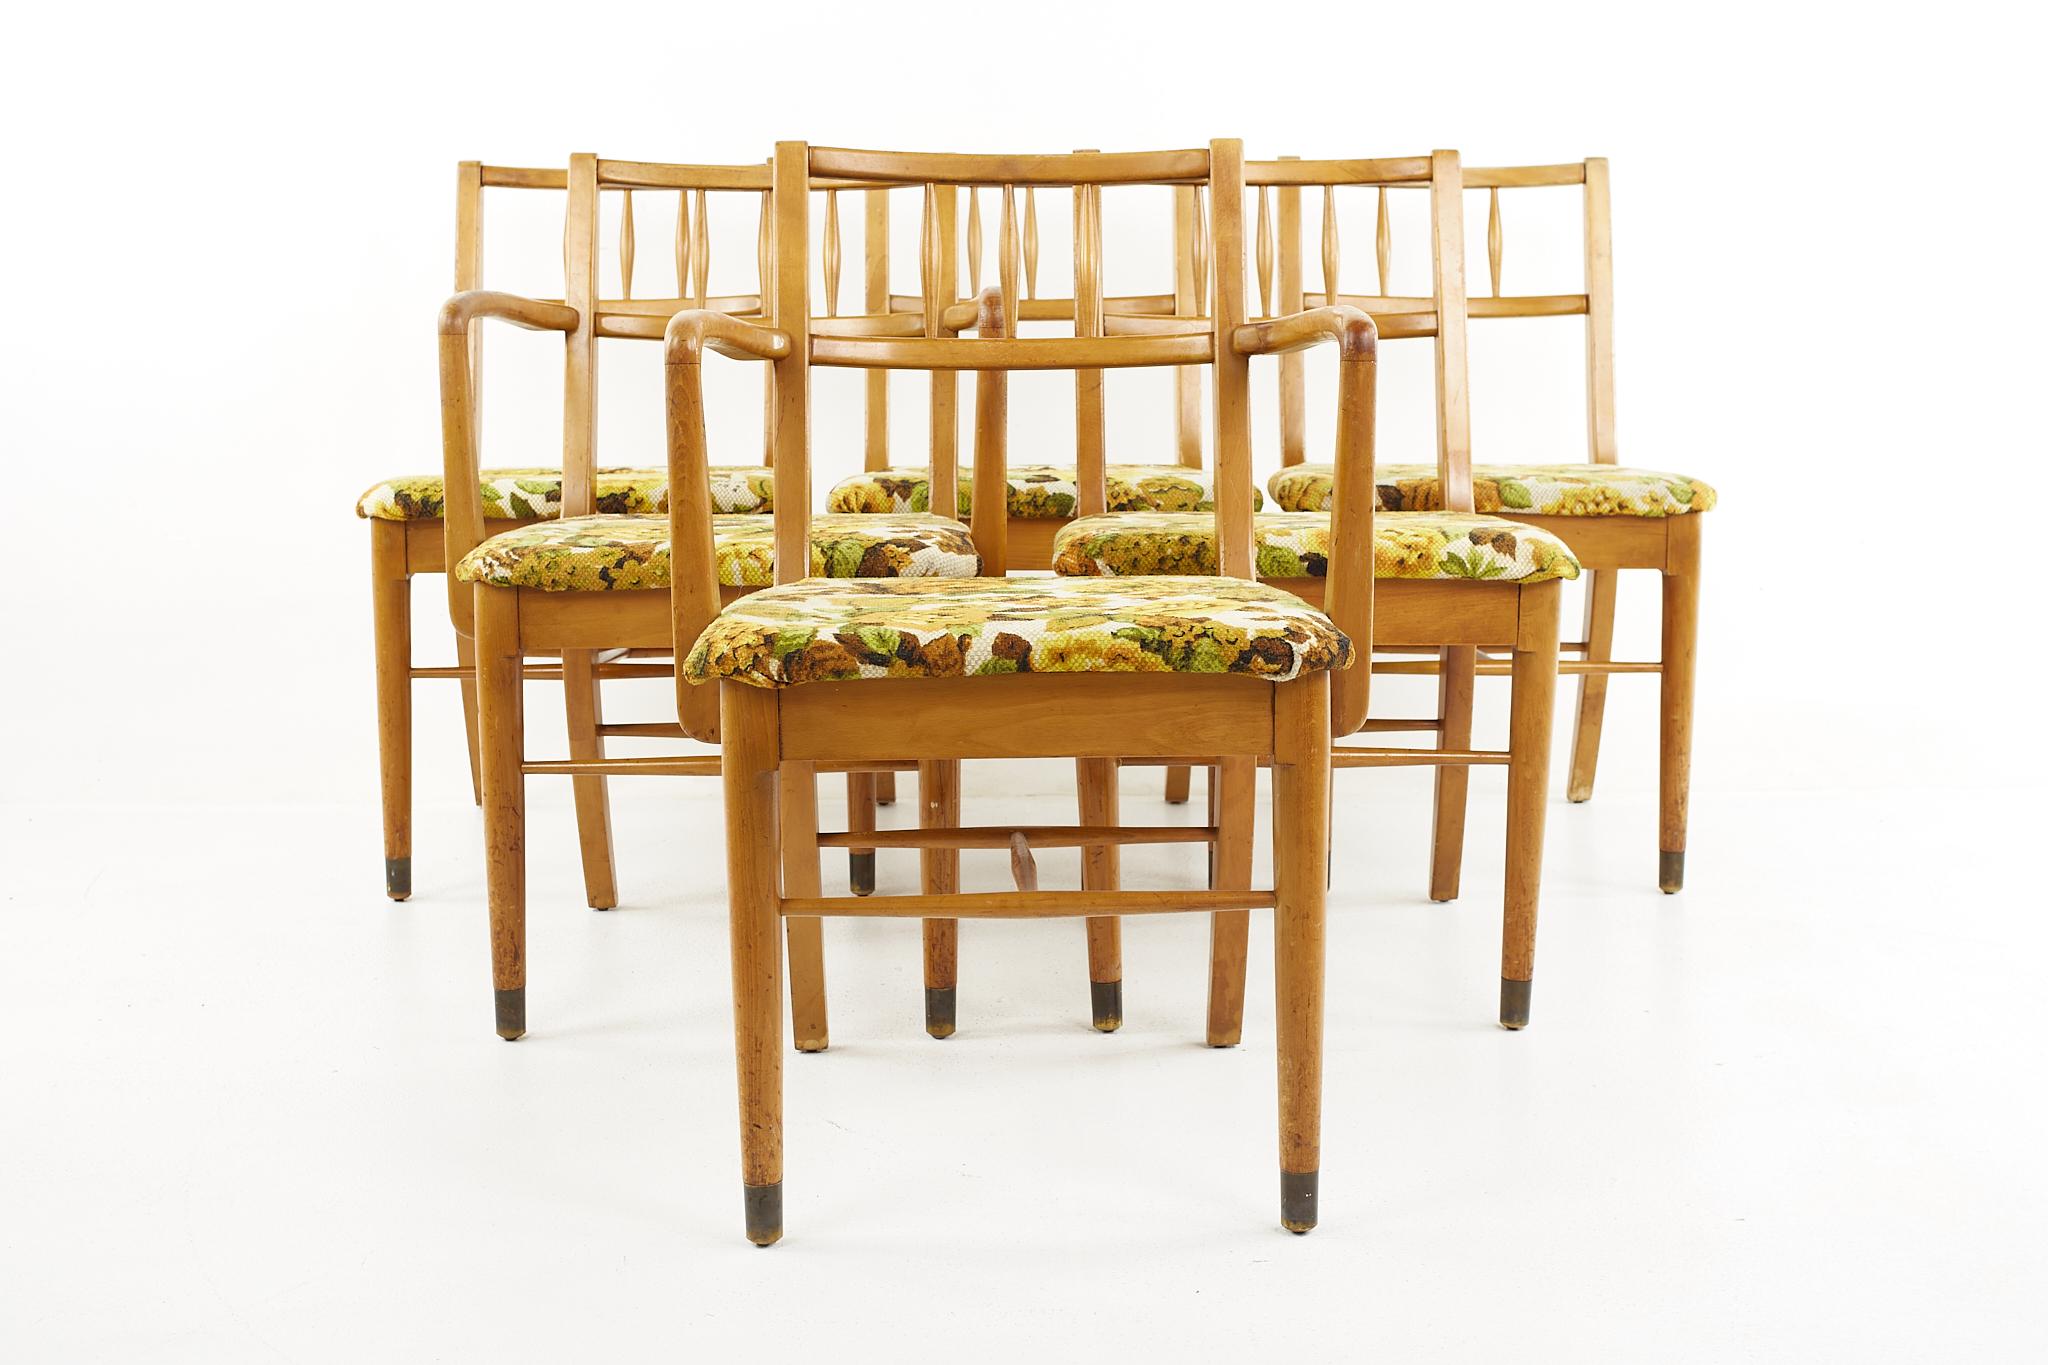 Drexel New Todays living mid century dining chairs - 6er Set

Jeder Stuhl misst: 21.25 breit x 21 tief x 33 hoch, mit einer Sitzhöhe von 18 Zoll und Armhöhe/Stuhlabstand von 27,5 Zoll 

Alle Möbelstücke sind in einem so genannten restaurierten